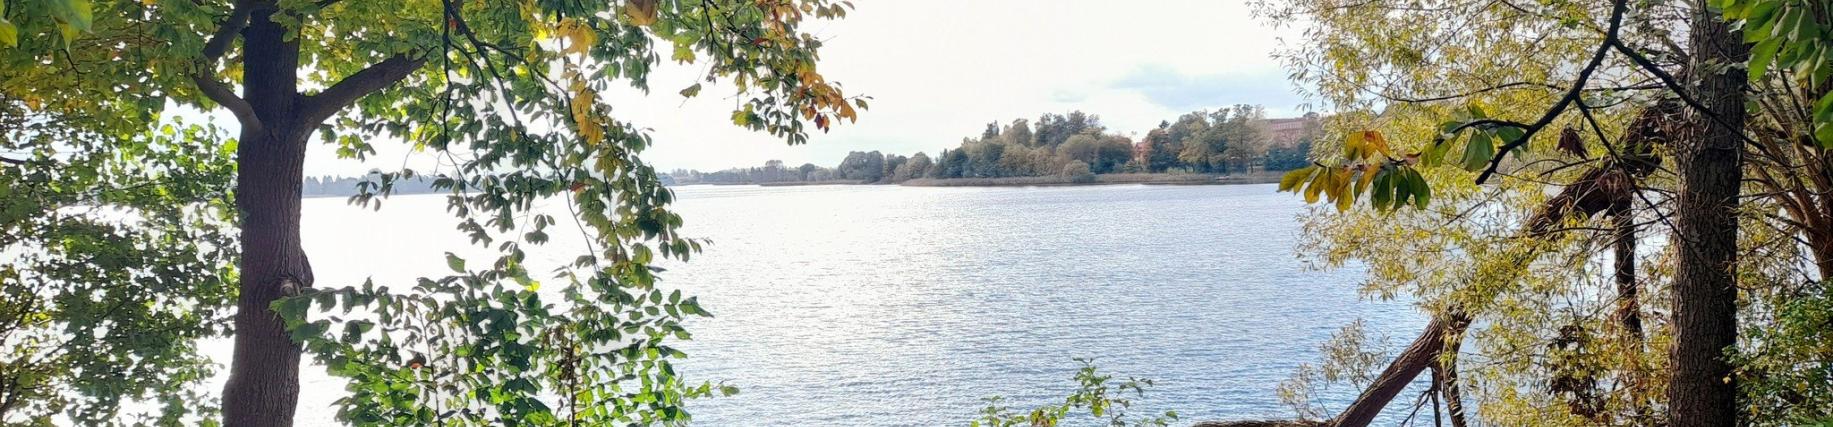 Jezioro Urzędowe jesienią